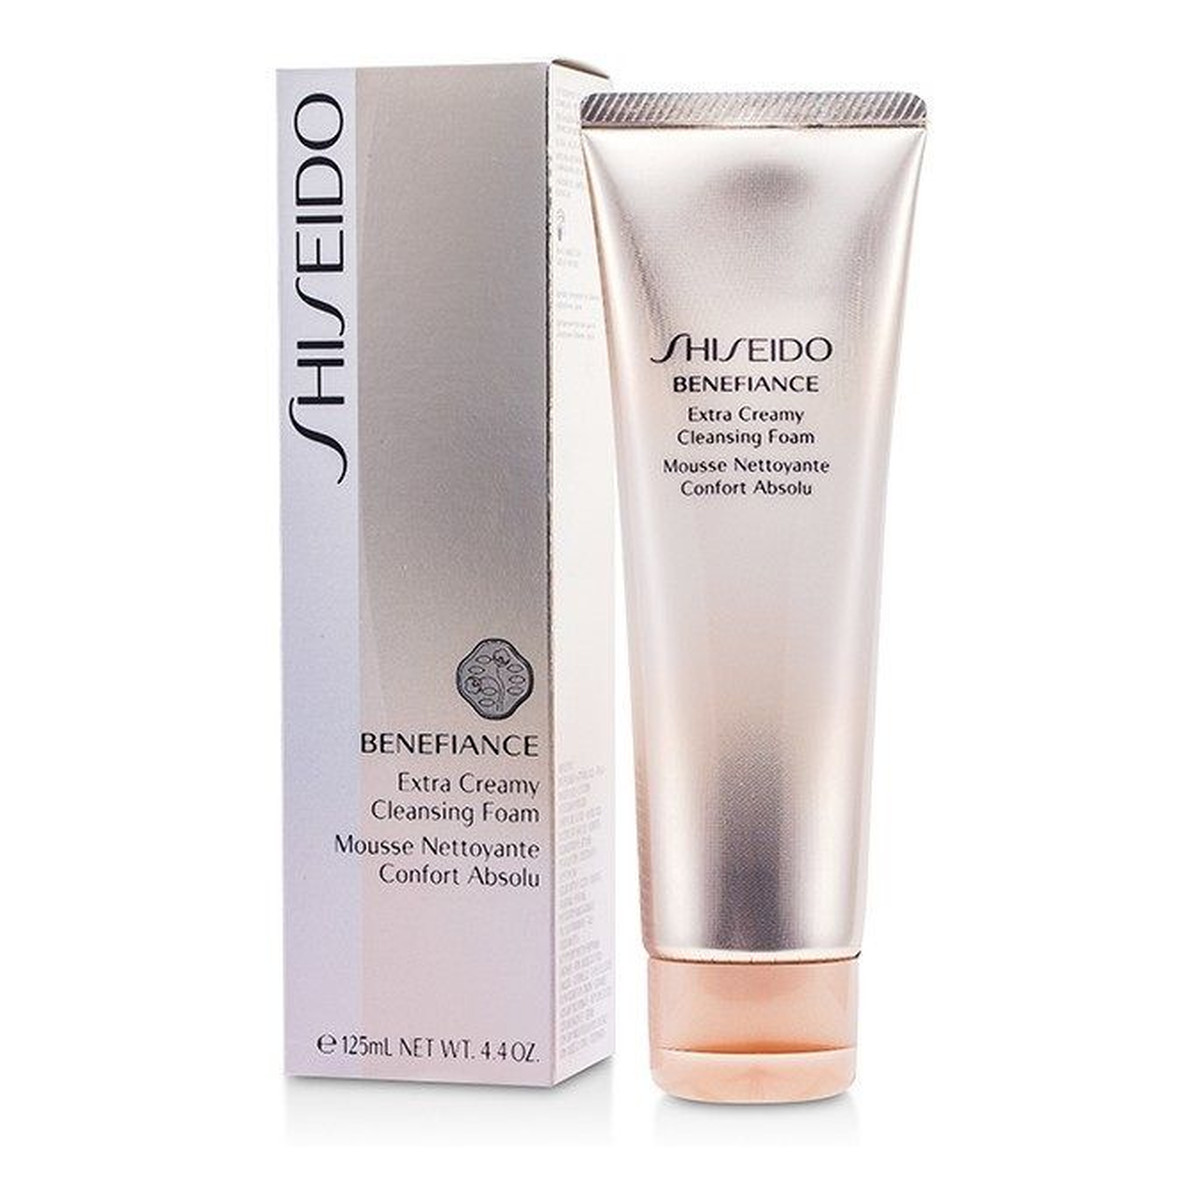 Shiseido Benefiance Kremowa pianka oczyszczająca do twarzy 125ml